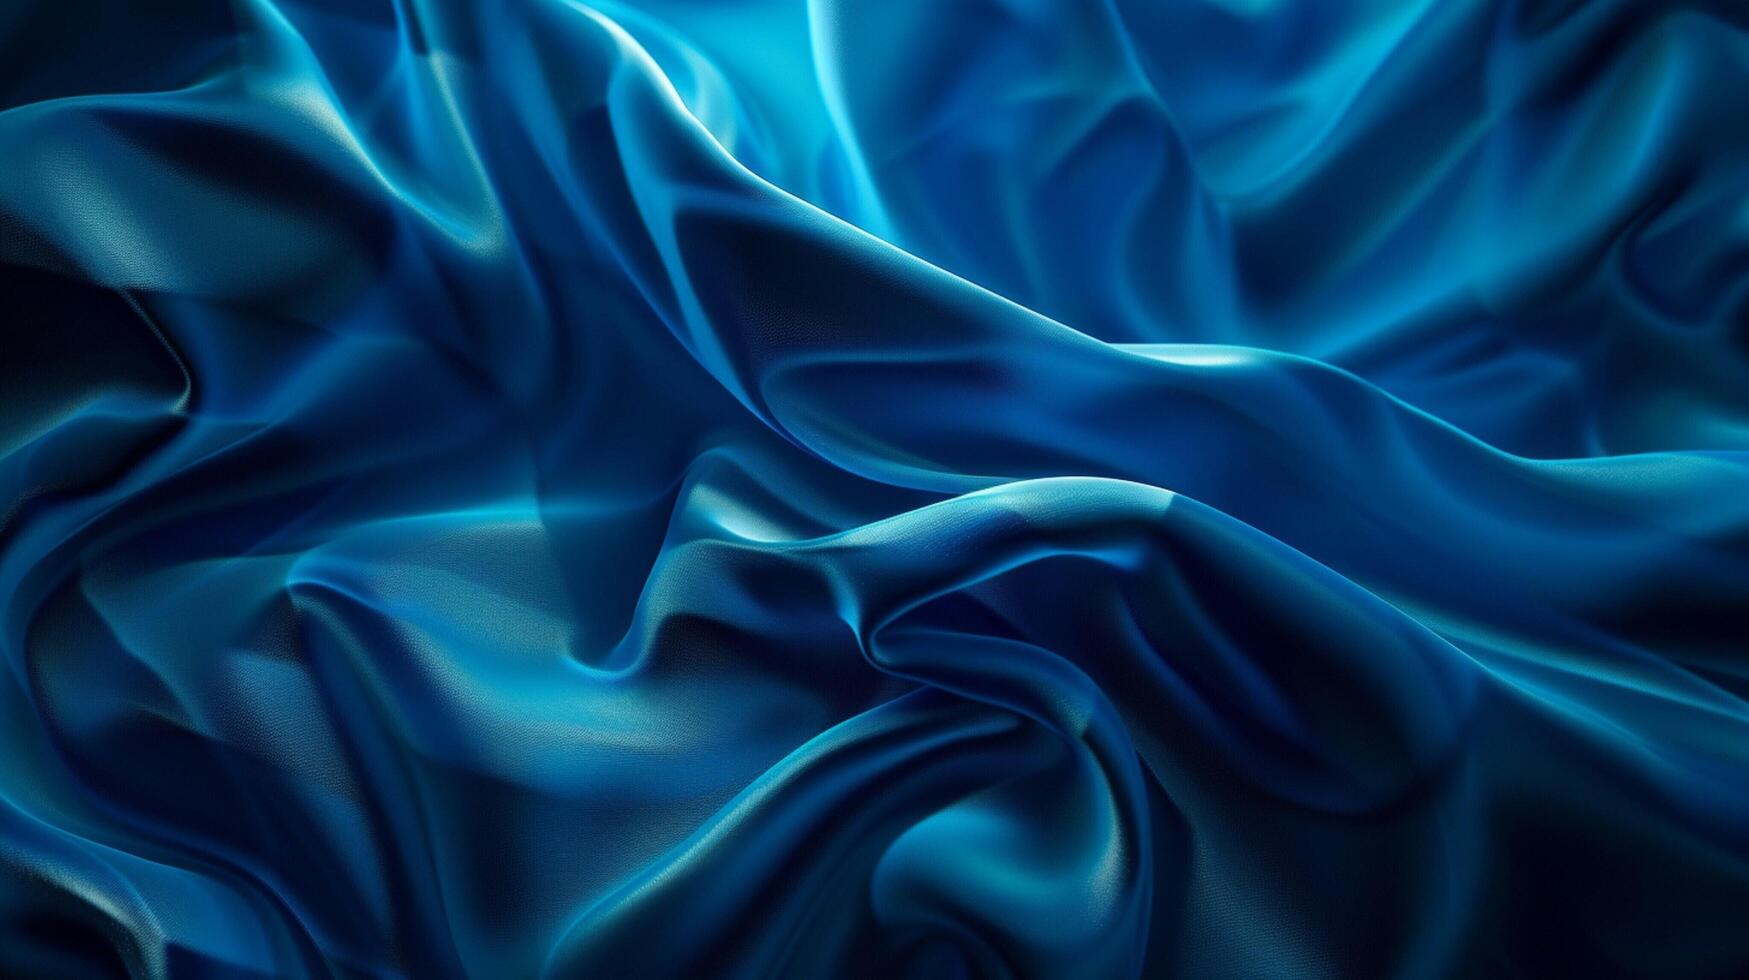 abstrakt glatt Blau mit schwarz Vignette Studio foto